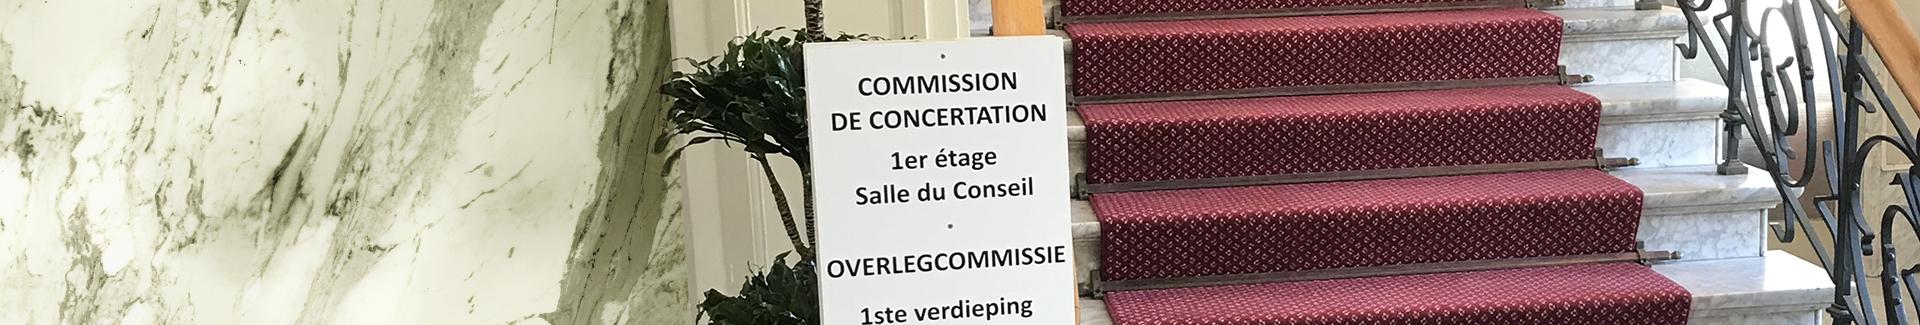 Overlegcommissie - banner